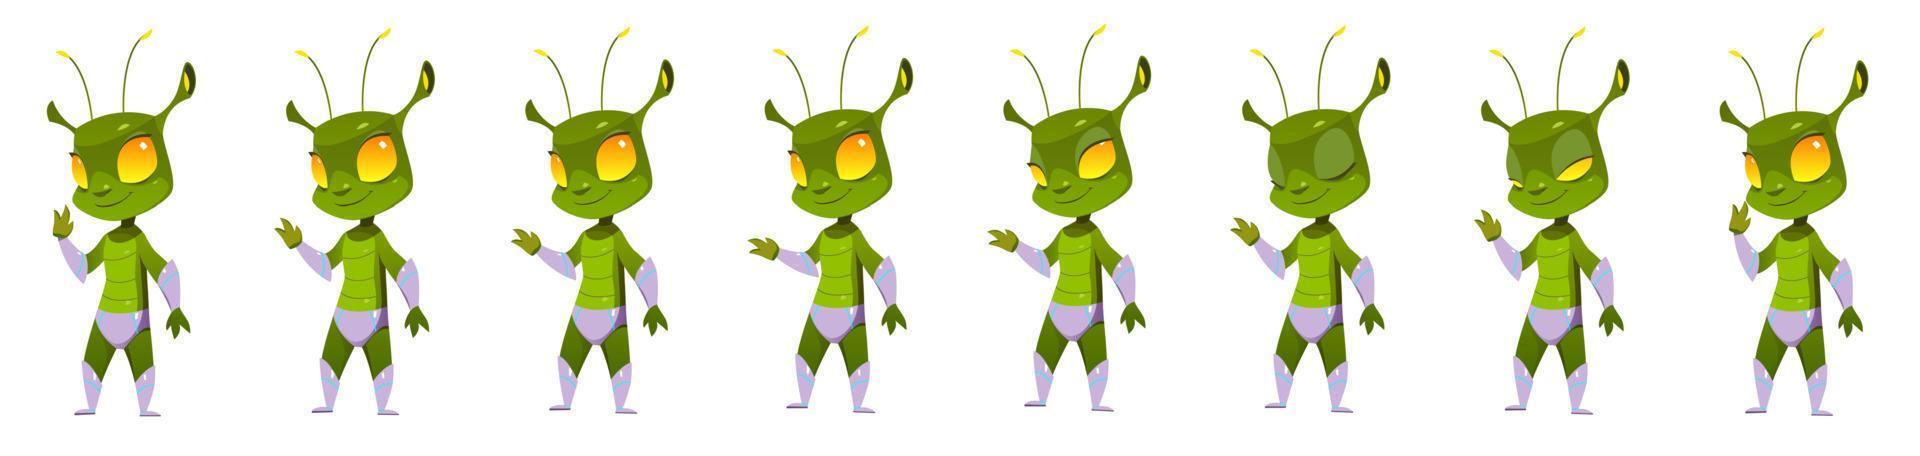 Zeichentrick-Alien-Charakter-Animations-Sprite-Blatt vektor